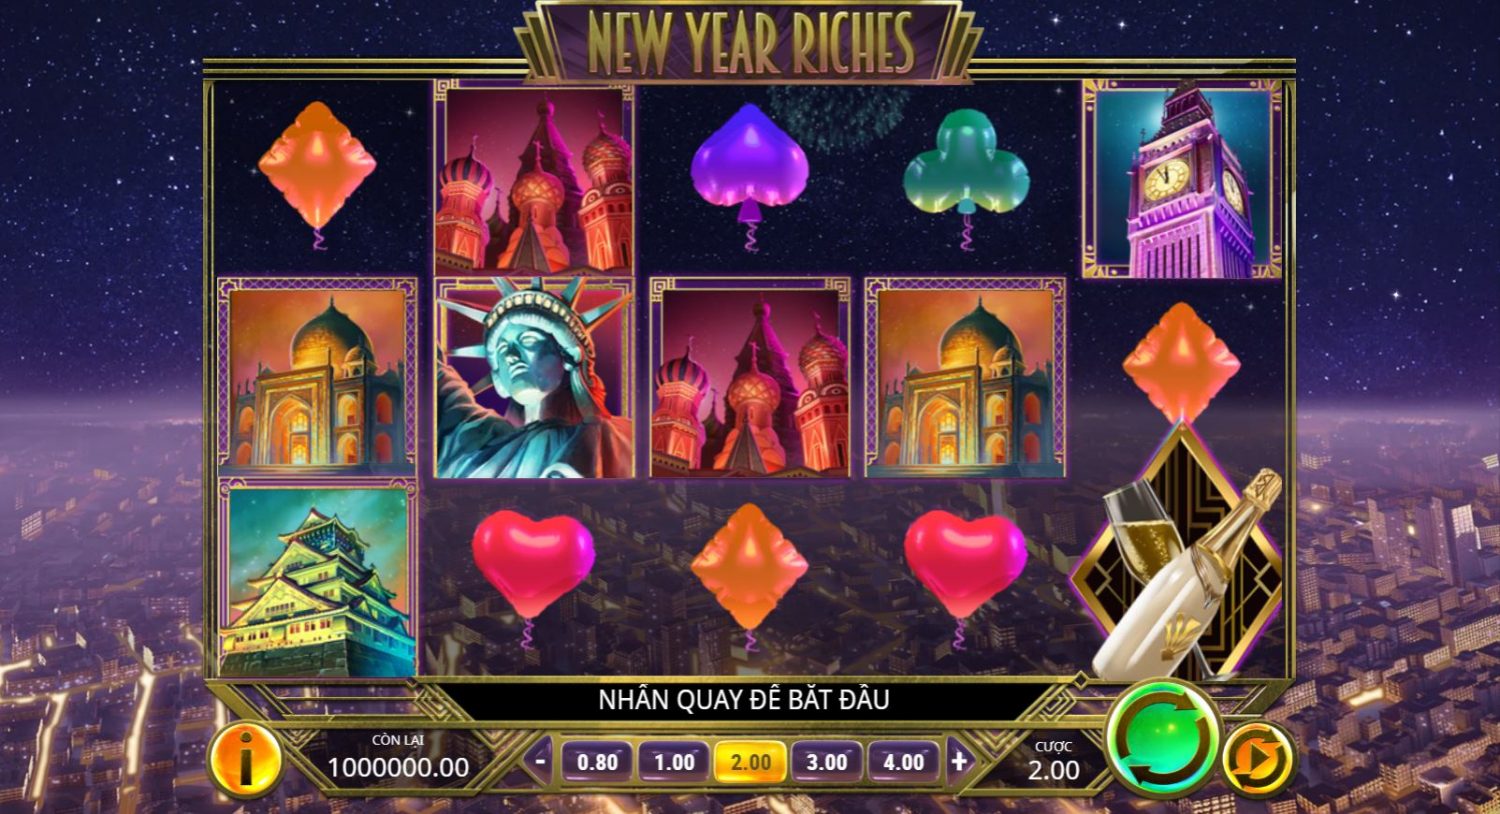 Hướng dẫn chơi game quay hũ New Year Riches - Năm mới giàu sang